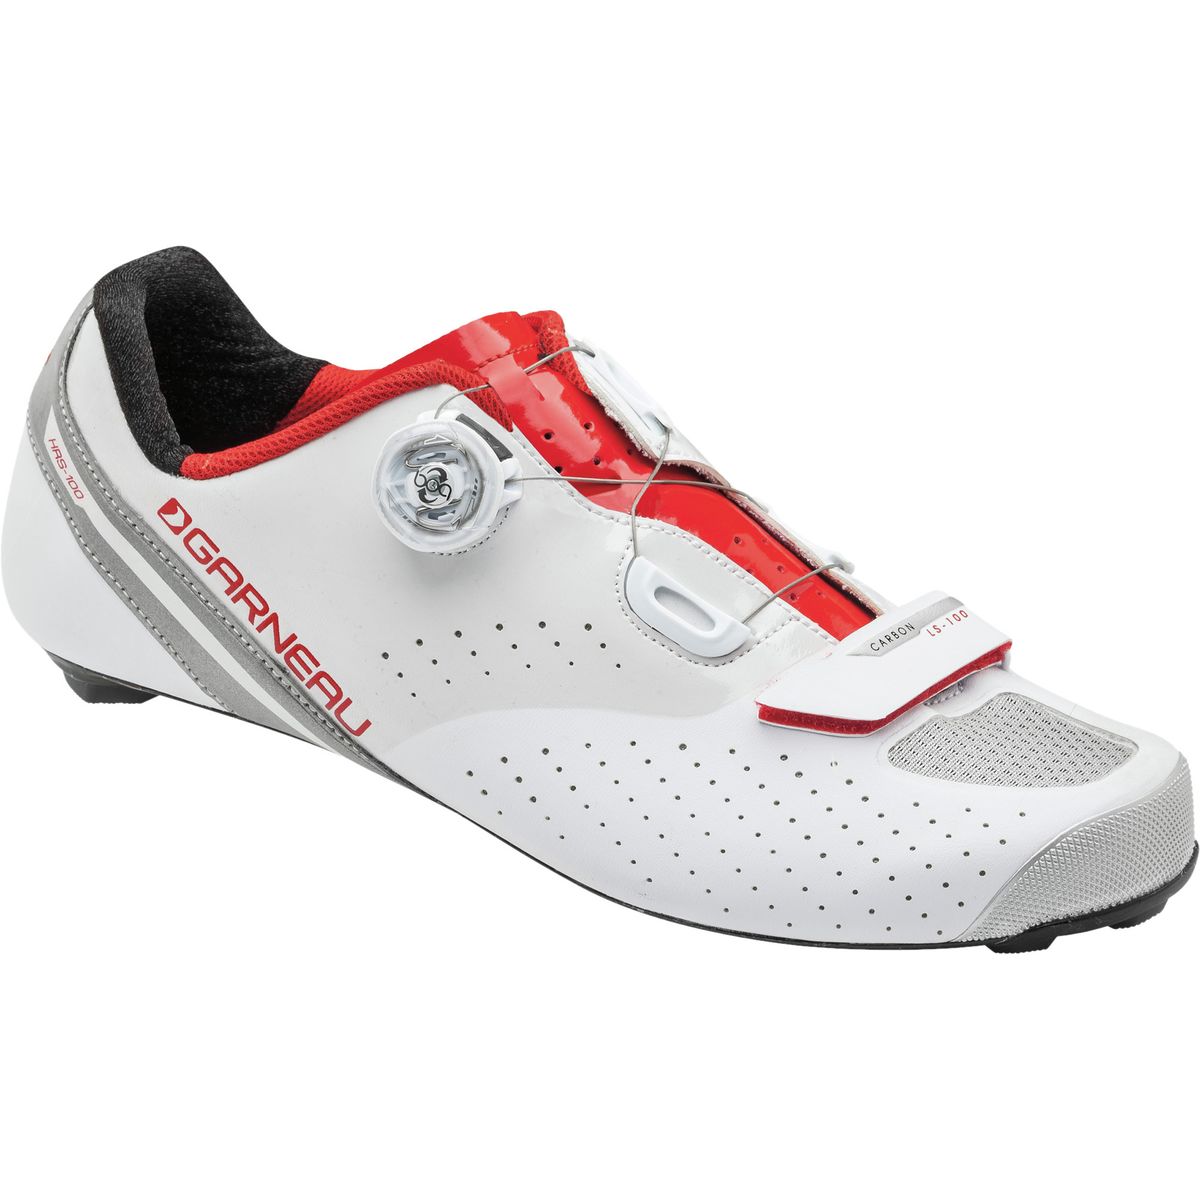 Louis Garneau Carbon LS-100 II Cycling Shoe - Men's